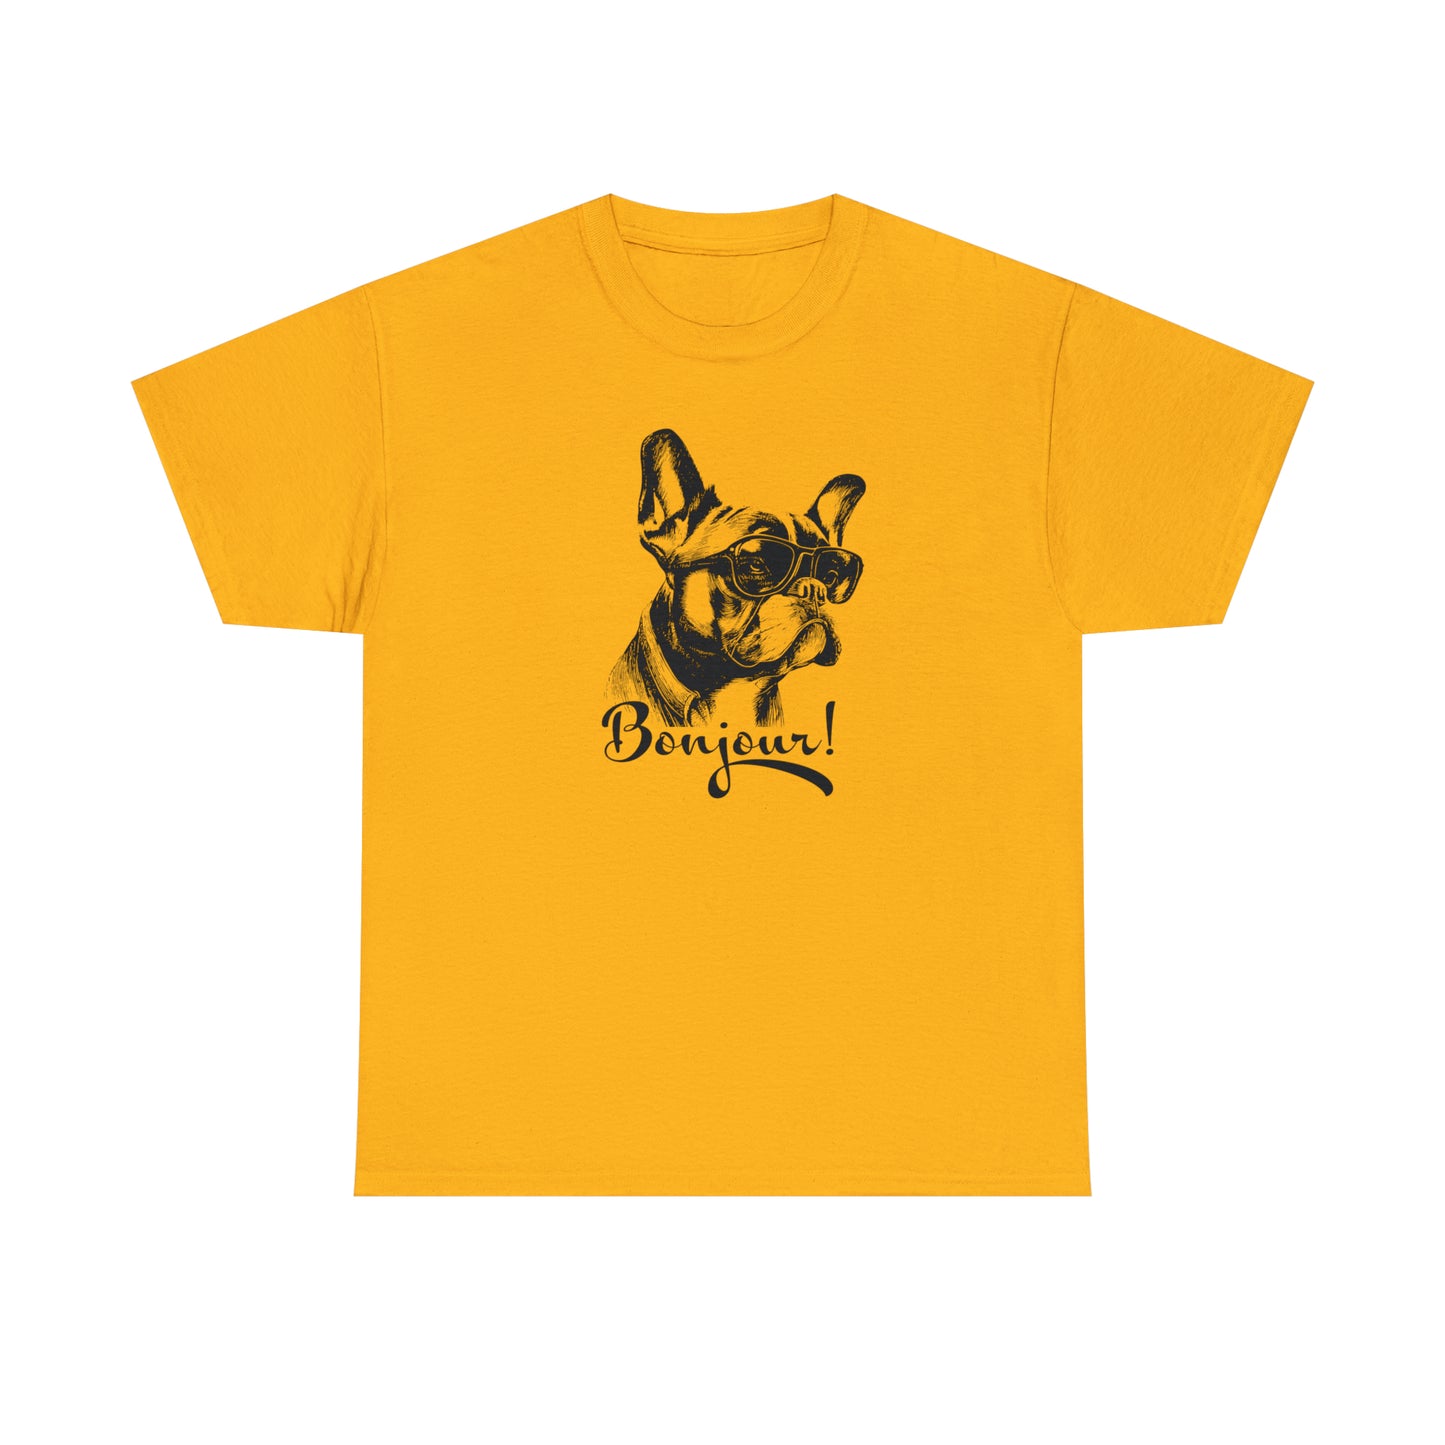 French Bulldog T-Shirt Cute Frenchie TShirt French Bulldog Lover Shirt Popular Dog Shirt Dog Lovers Gift T Shirt French Dog Animal Lover Tee